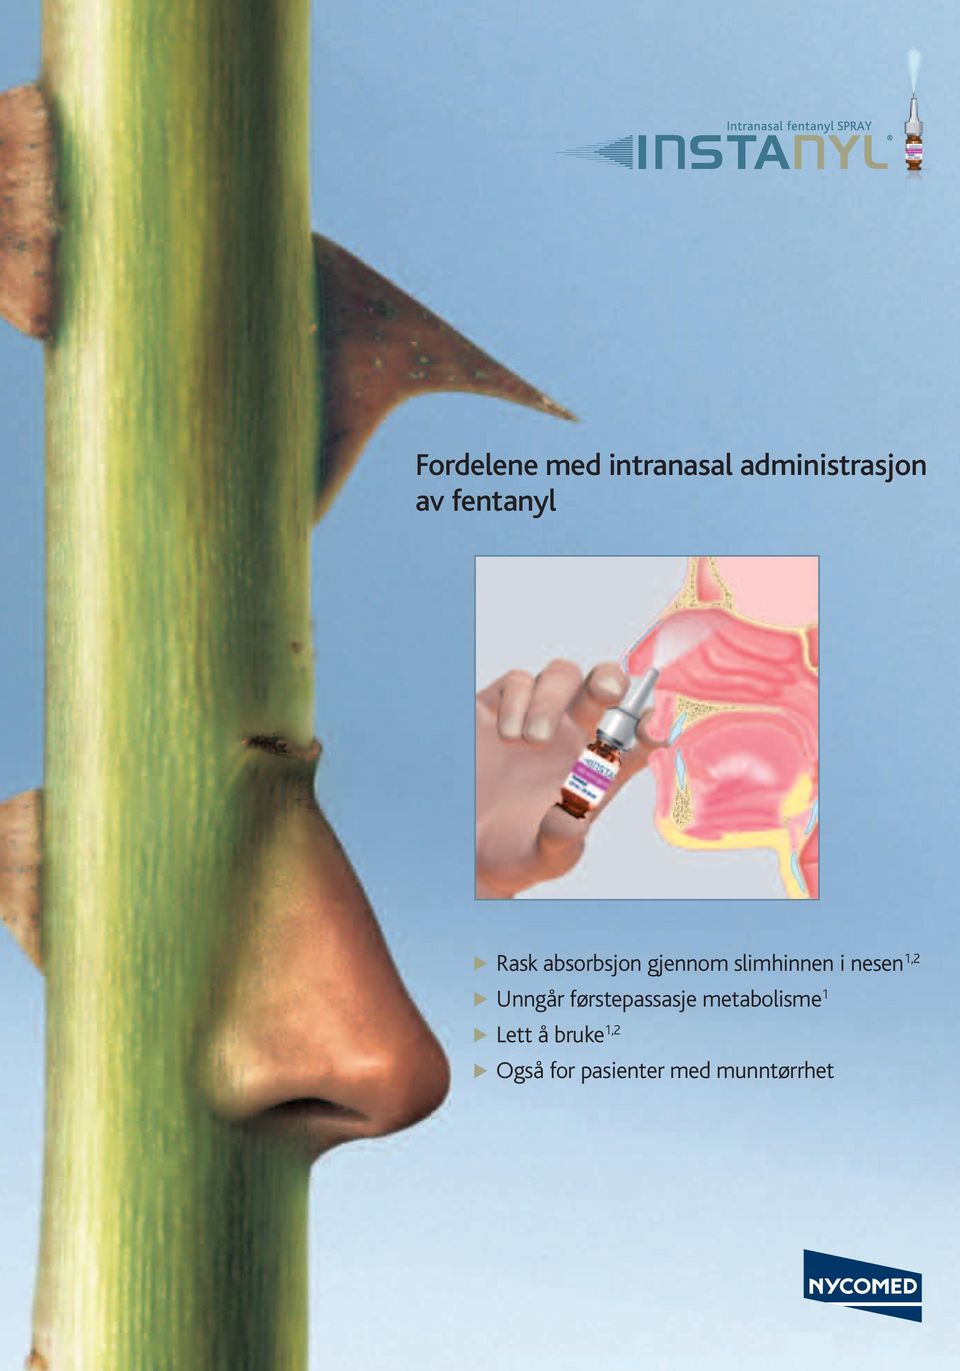 nesen 1,2 Unngår førstepassasje metabolisme 1